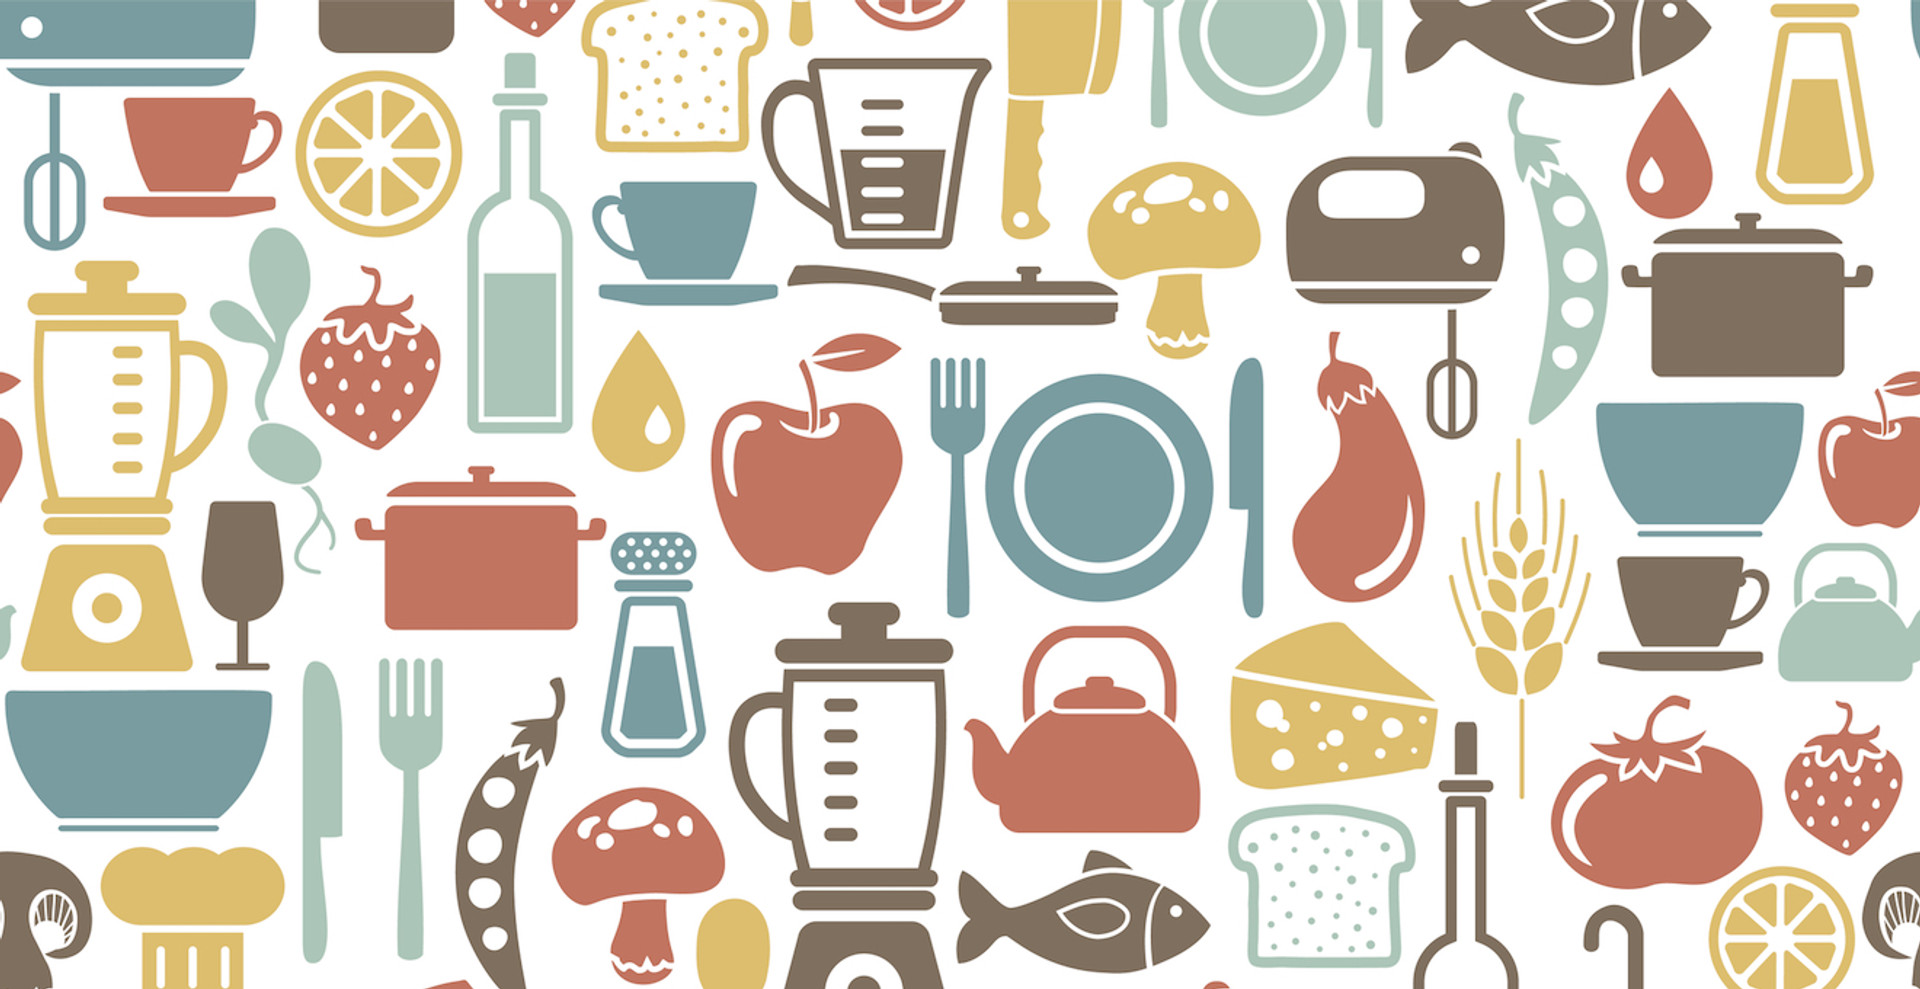 12 міфів про харчування, які розвінчує наука: сніданок, кава, вода, глютен, лактоза та наша “худа-повна” фігура